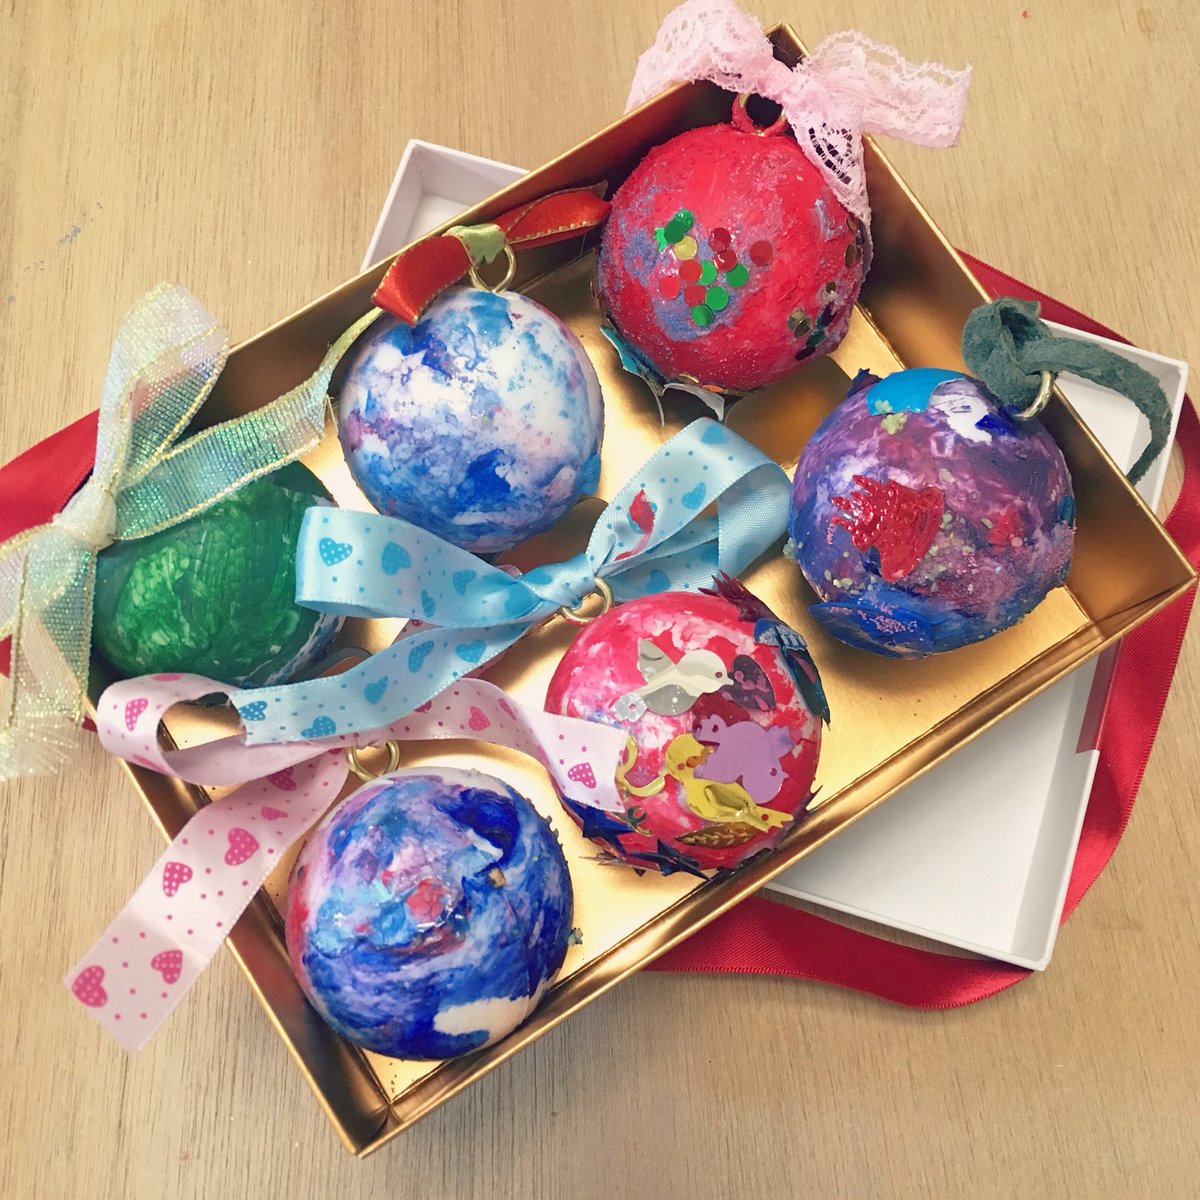 Uzivatel Porque Art ポルケアート Na Twitteru クリスマスをイメージしたボールの飾りを 4歳以下の小さな子供たちと一緒に作りました 絵の具が乾いたので頂き物のお菓子の箱に詰めたら あら可愛い 贈り物みたい クリスマス 贈り物 ギフト 子どもの作品